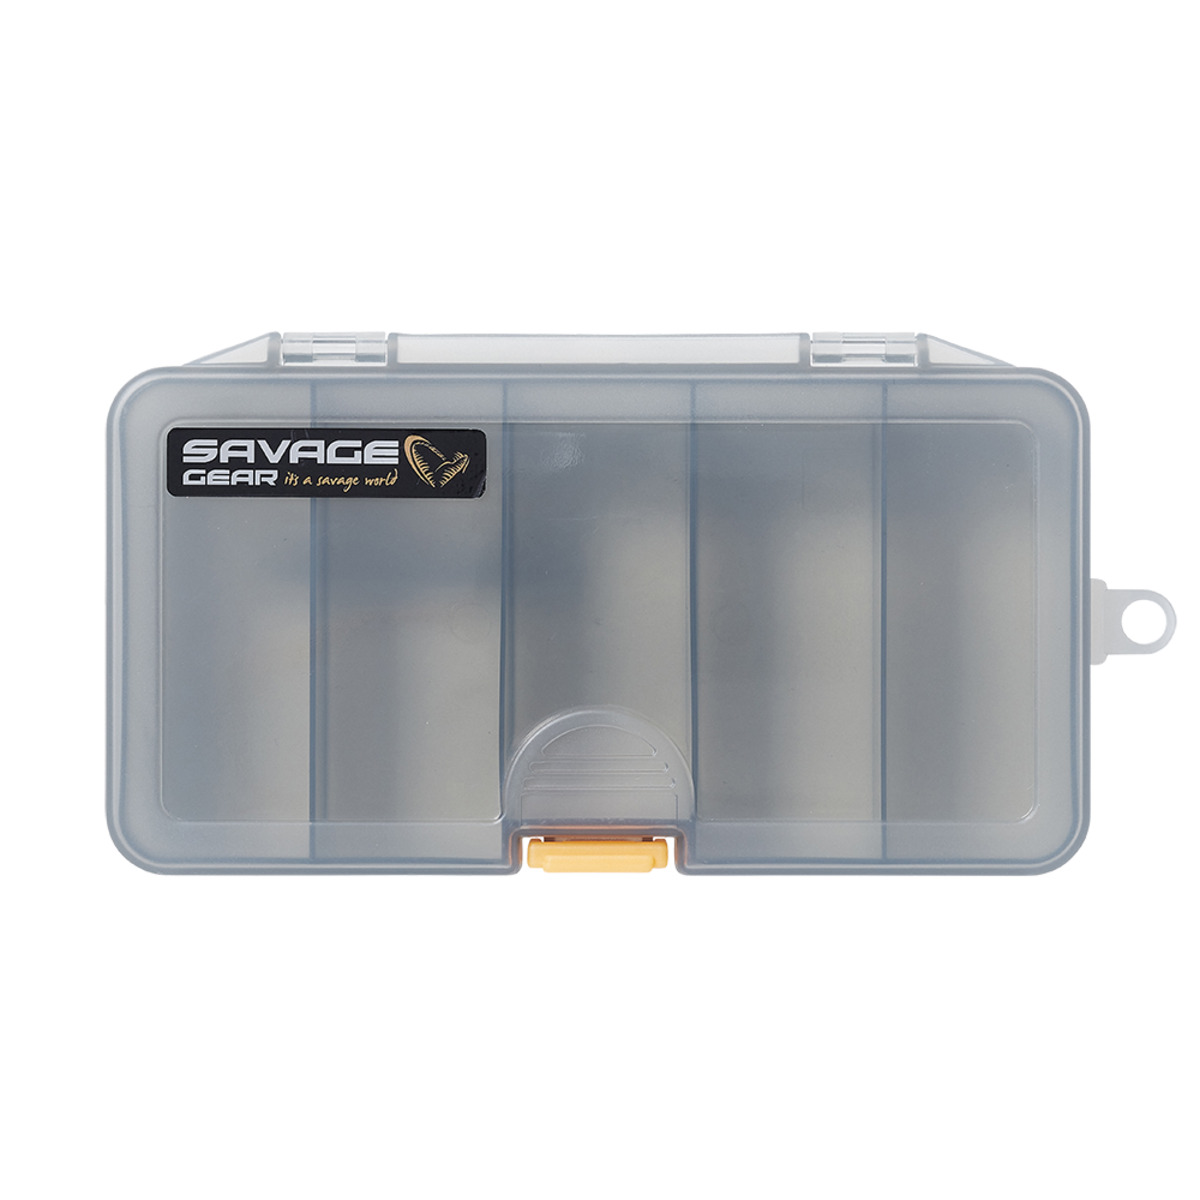 Savage Gear Smoke 13.8x7.7x3.1cm 1 Cassette - LUREBOX 3A SMOKE 18.6X10.3X3.4CM 1 CASSETTE